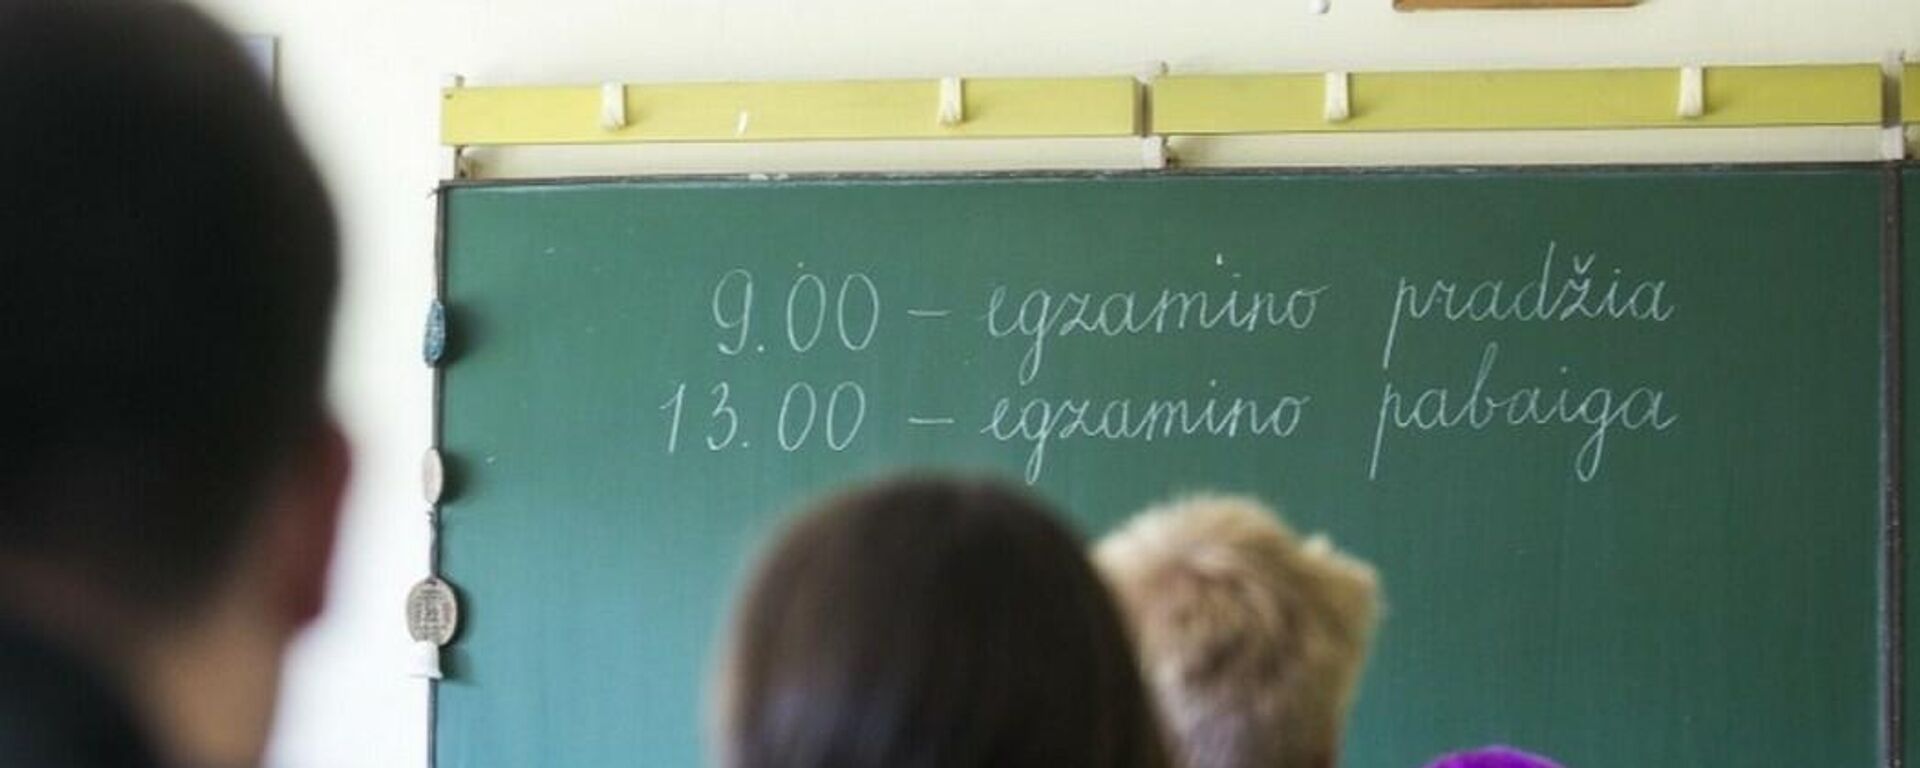 Egzaminai Lietuvos mokykloje - Sputnik Lietuva, 1920, 31.05.2021